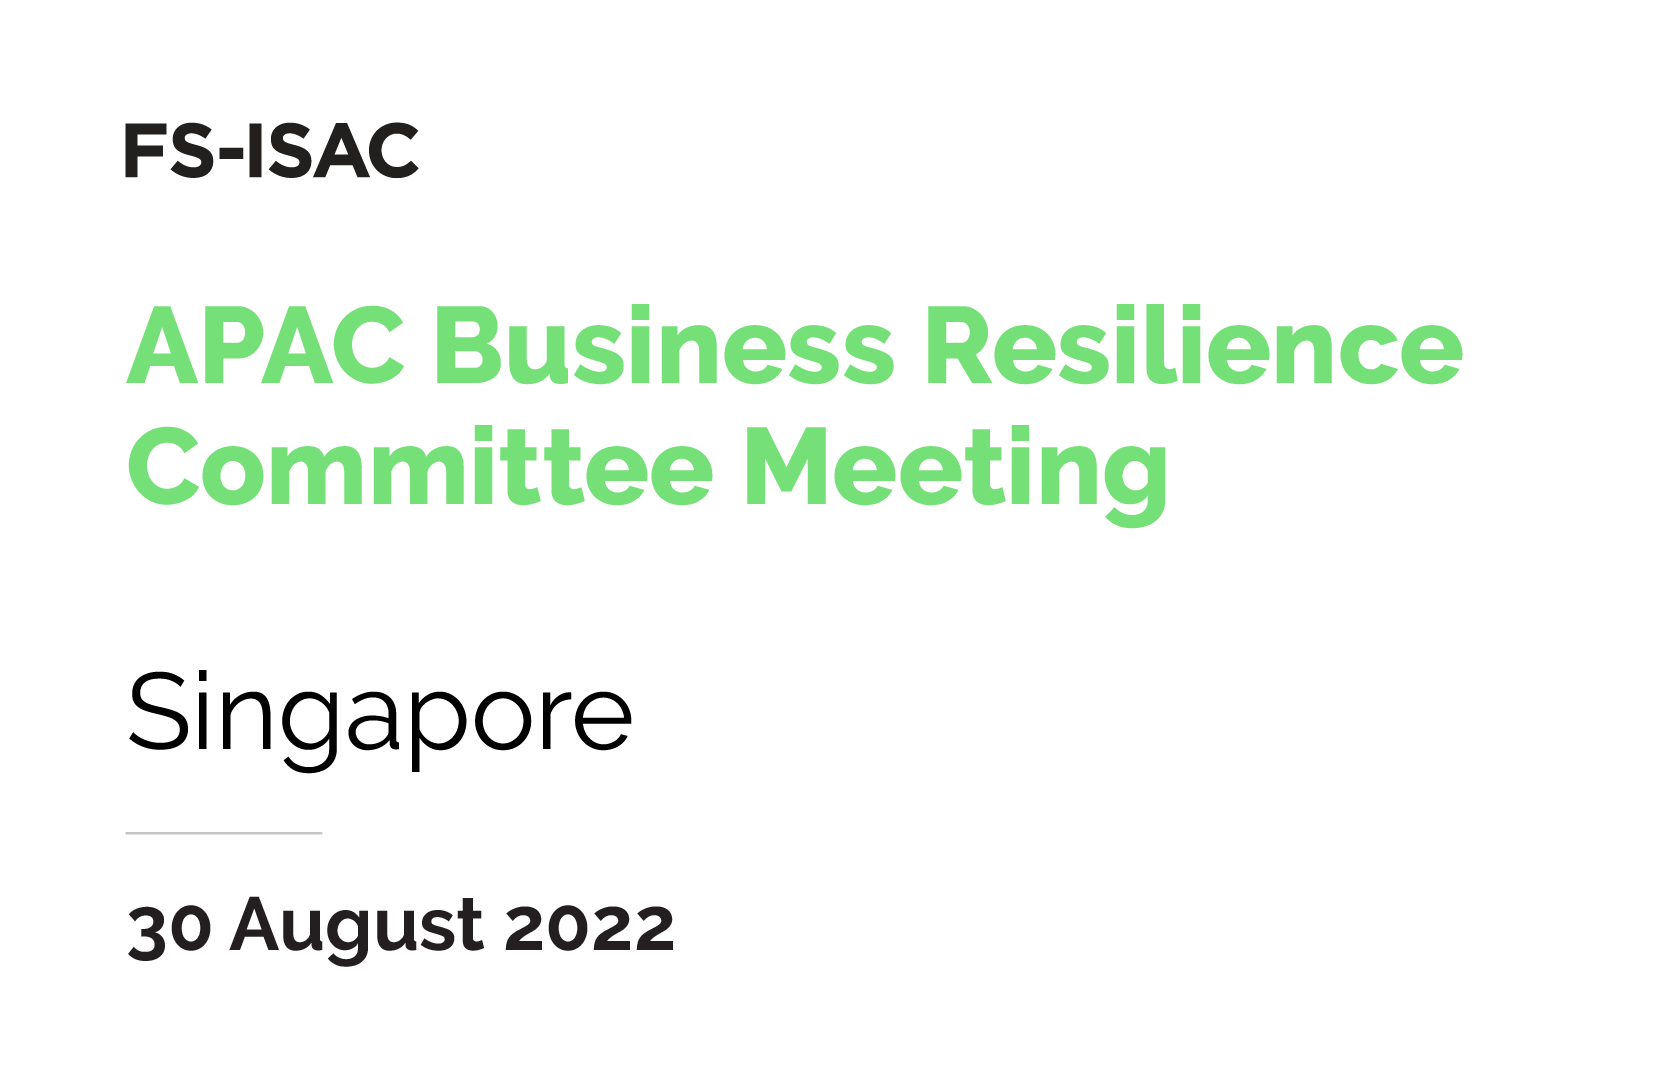 APAC Business Resiliency Committee Meeting